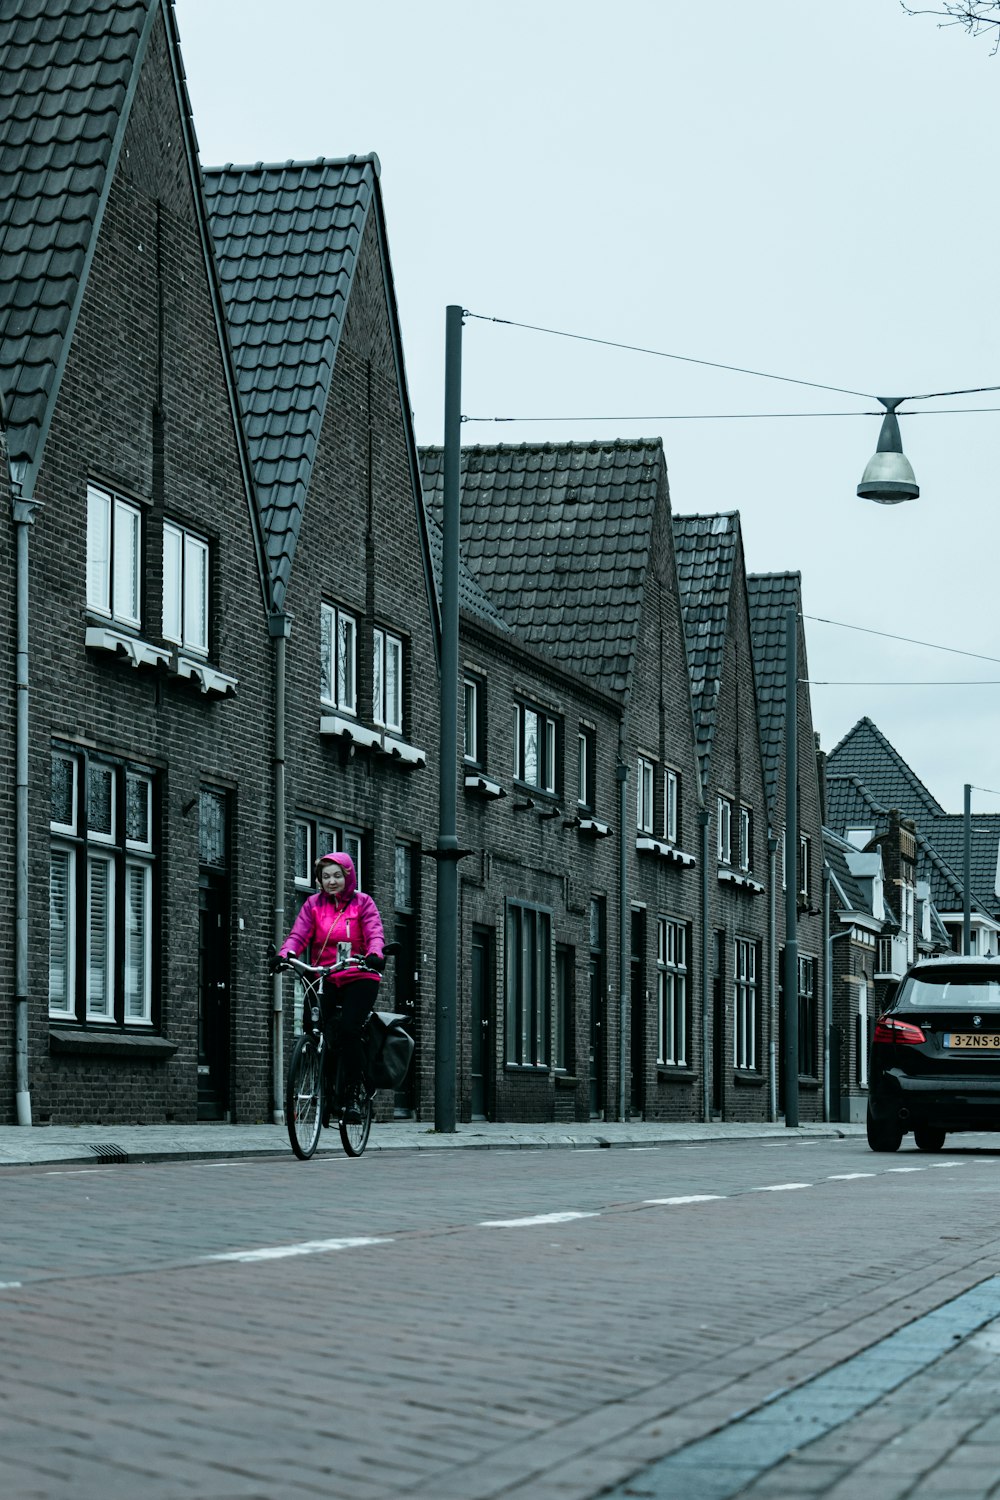 una persona montando en bicicleta por una calle